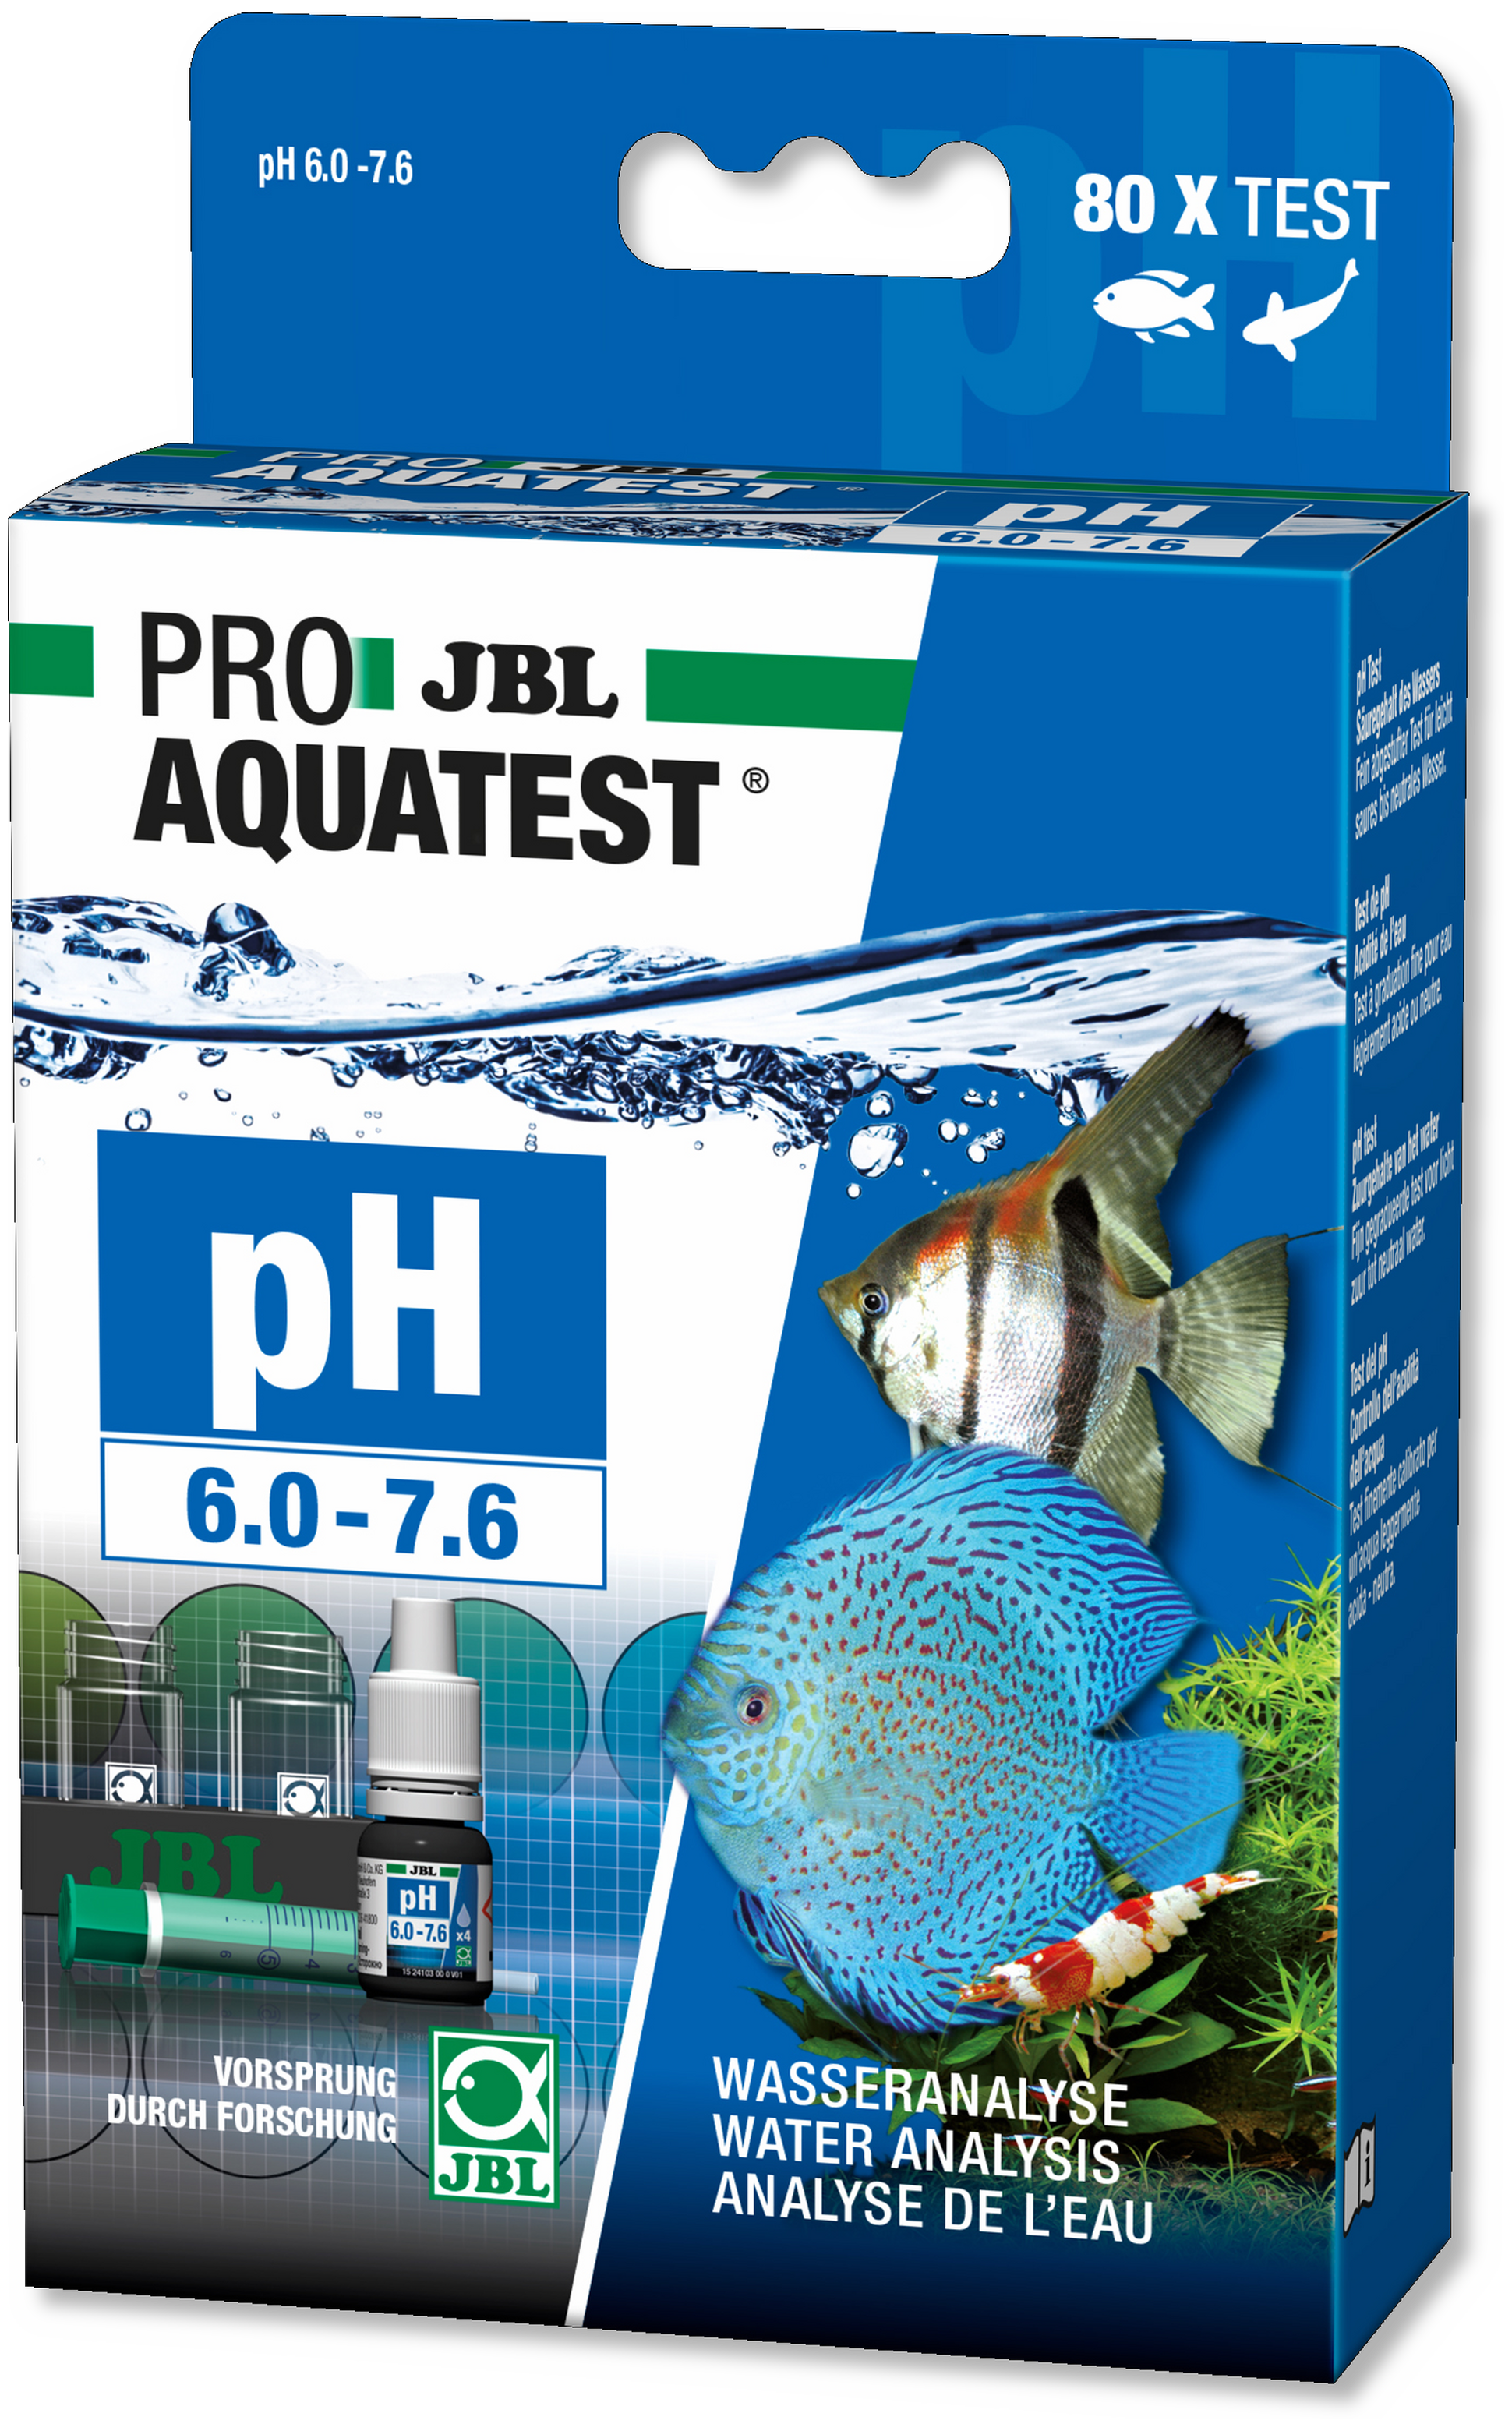 JBL PROAQUATEST pH 6.0-7.6